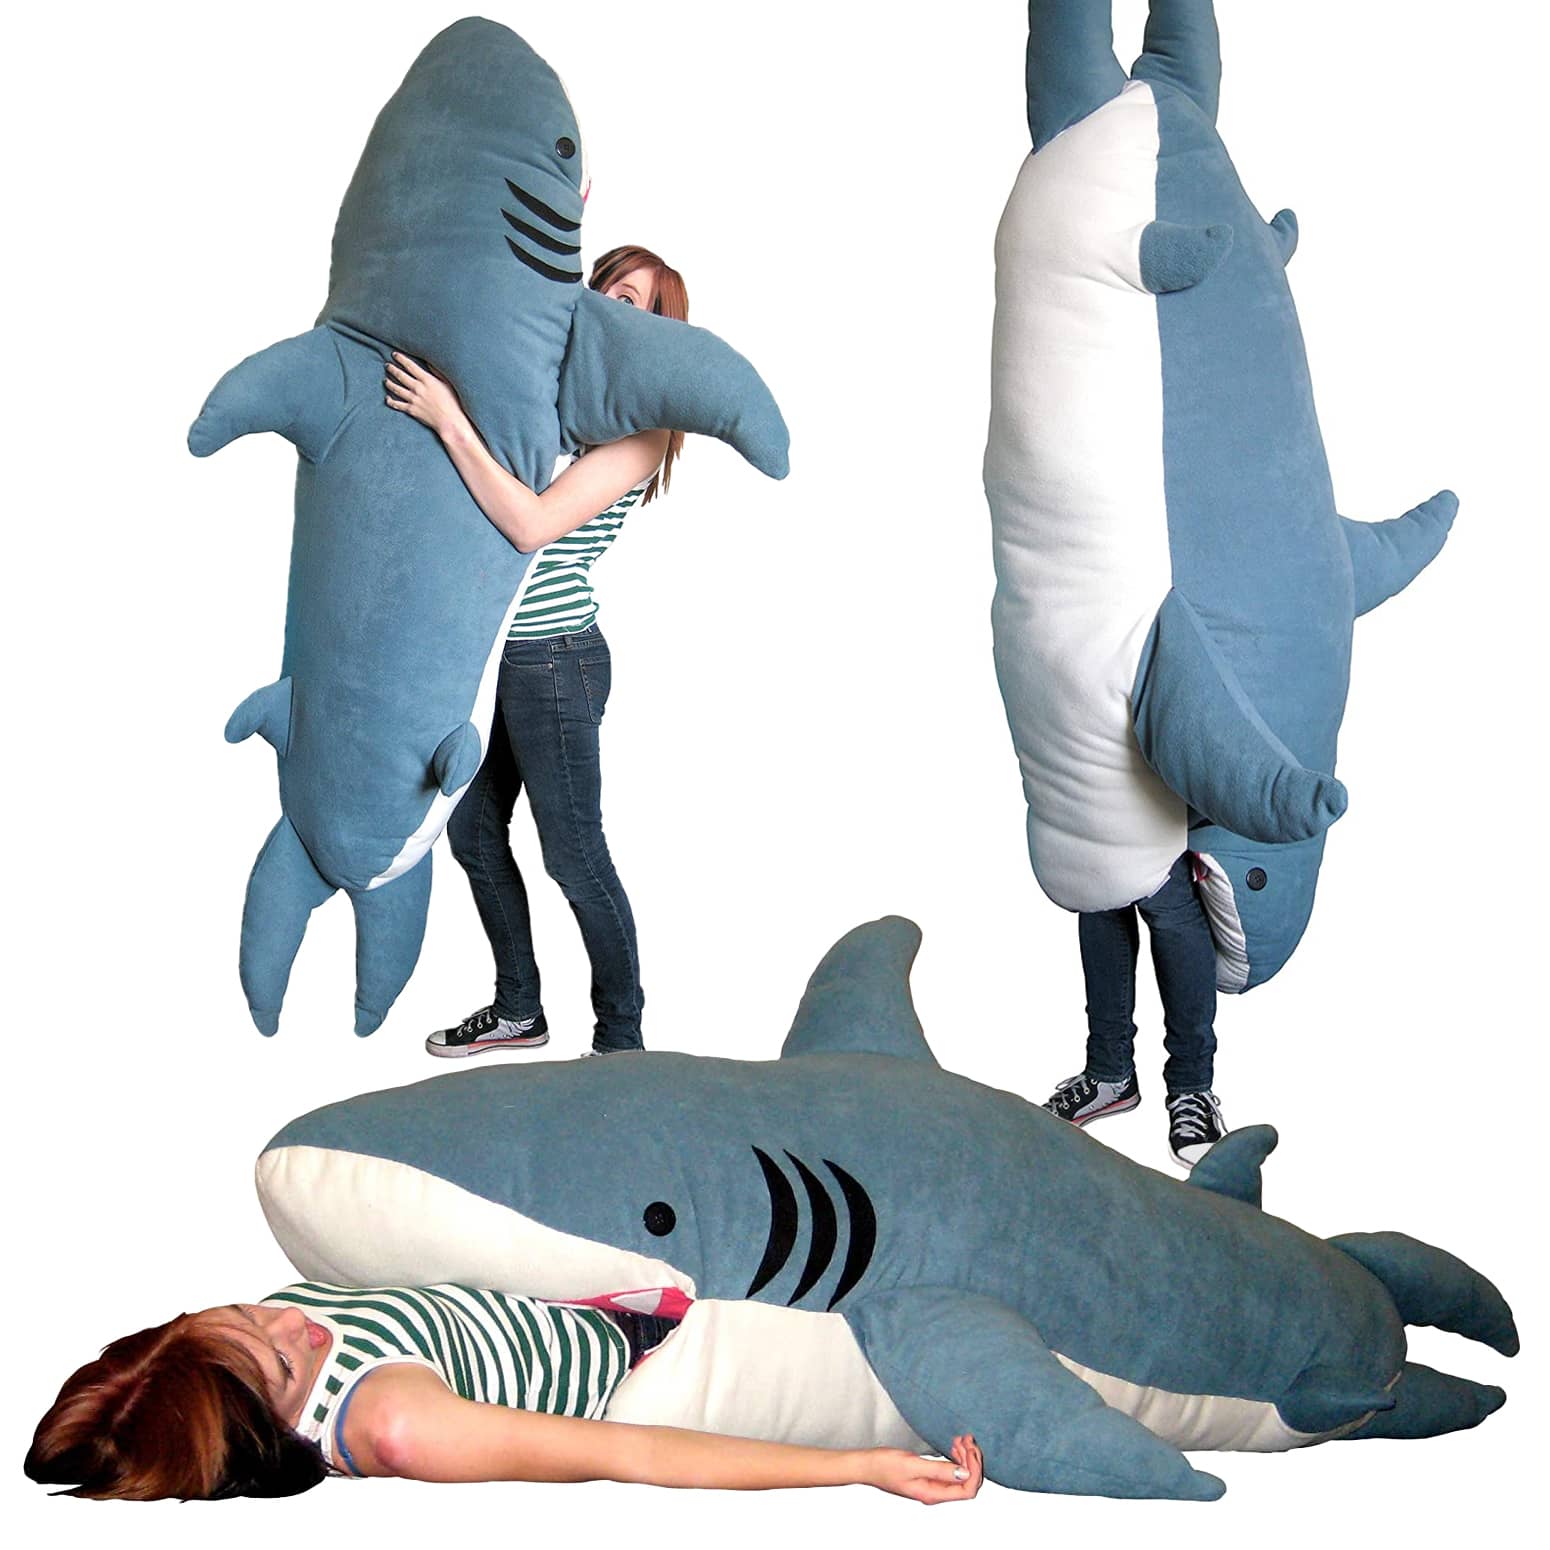 Chumbuddy Shark Sleeping Bag - Over 6.5 Feet Long!